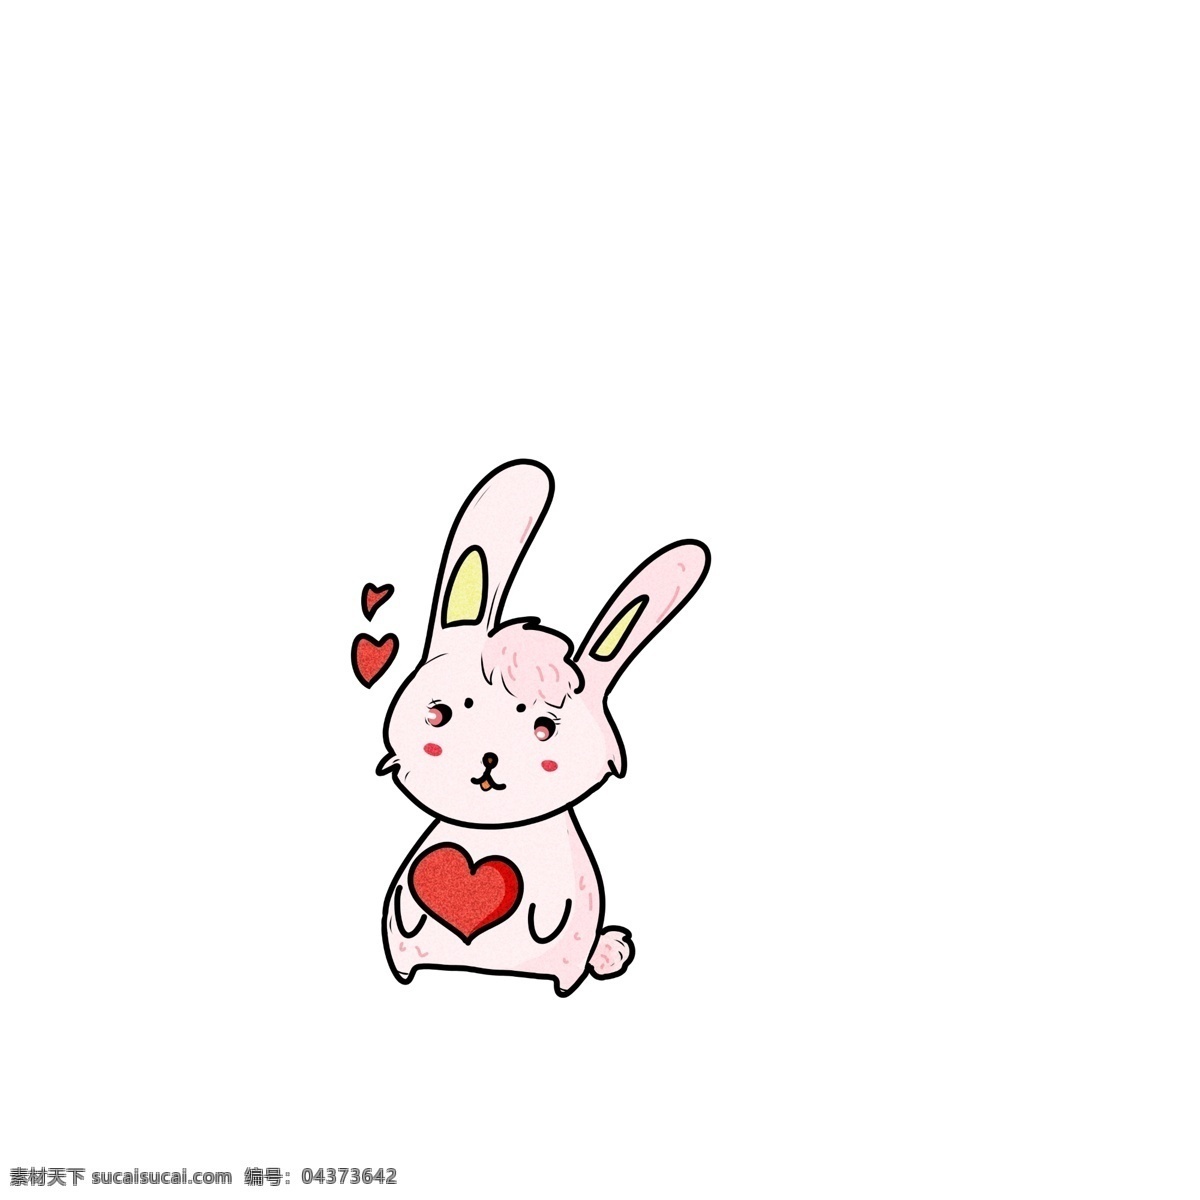 粉色 爱情 小 兔子 插画 红色的桃心 漂亮 萌 可爱 手绘